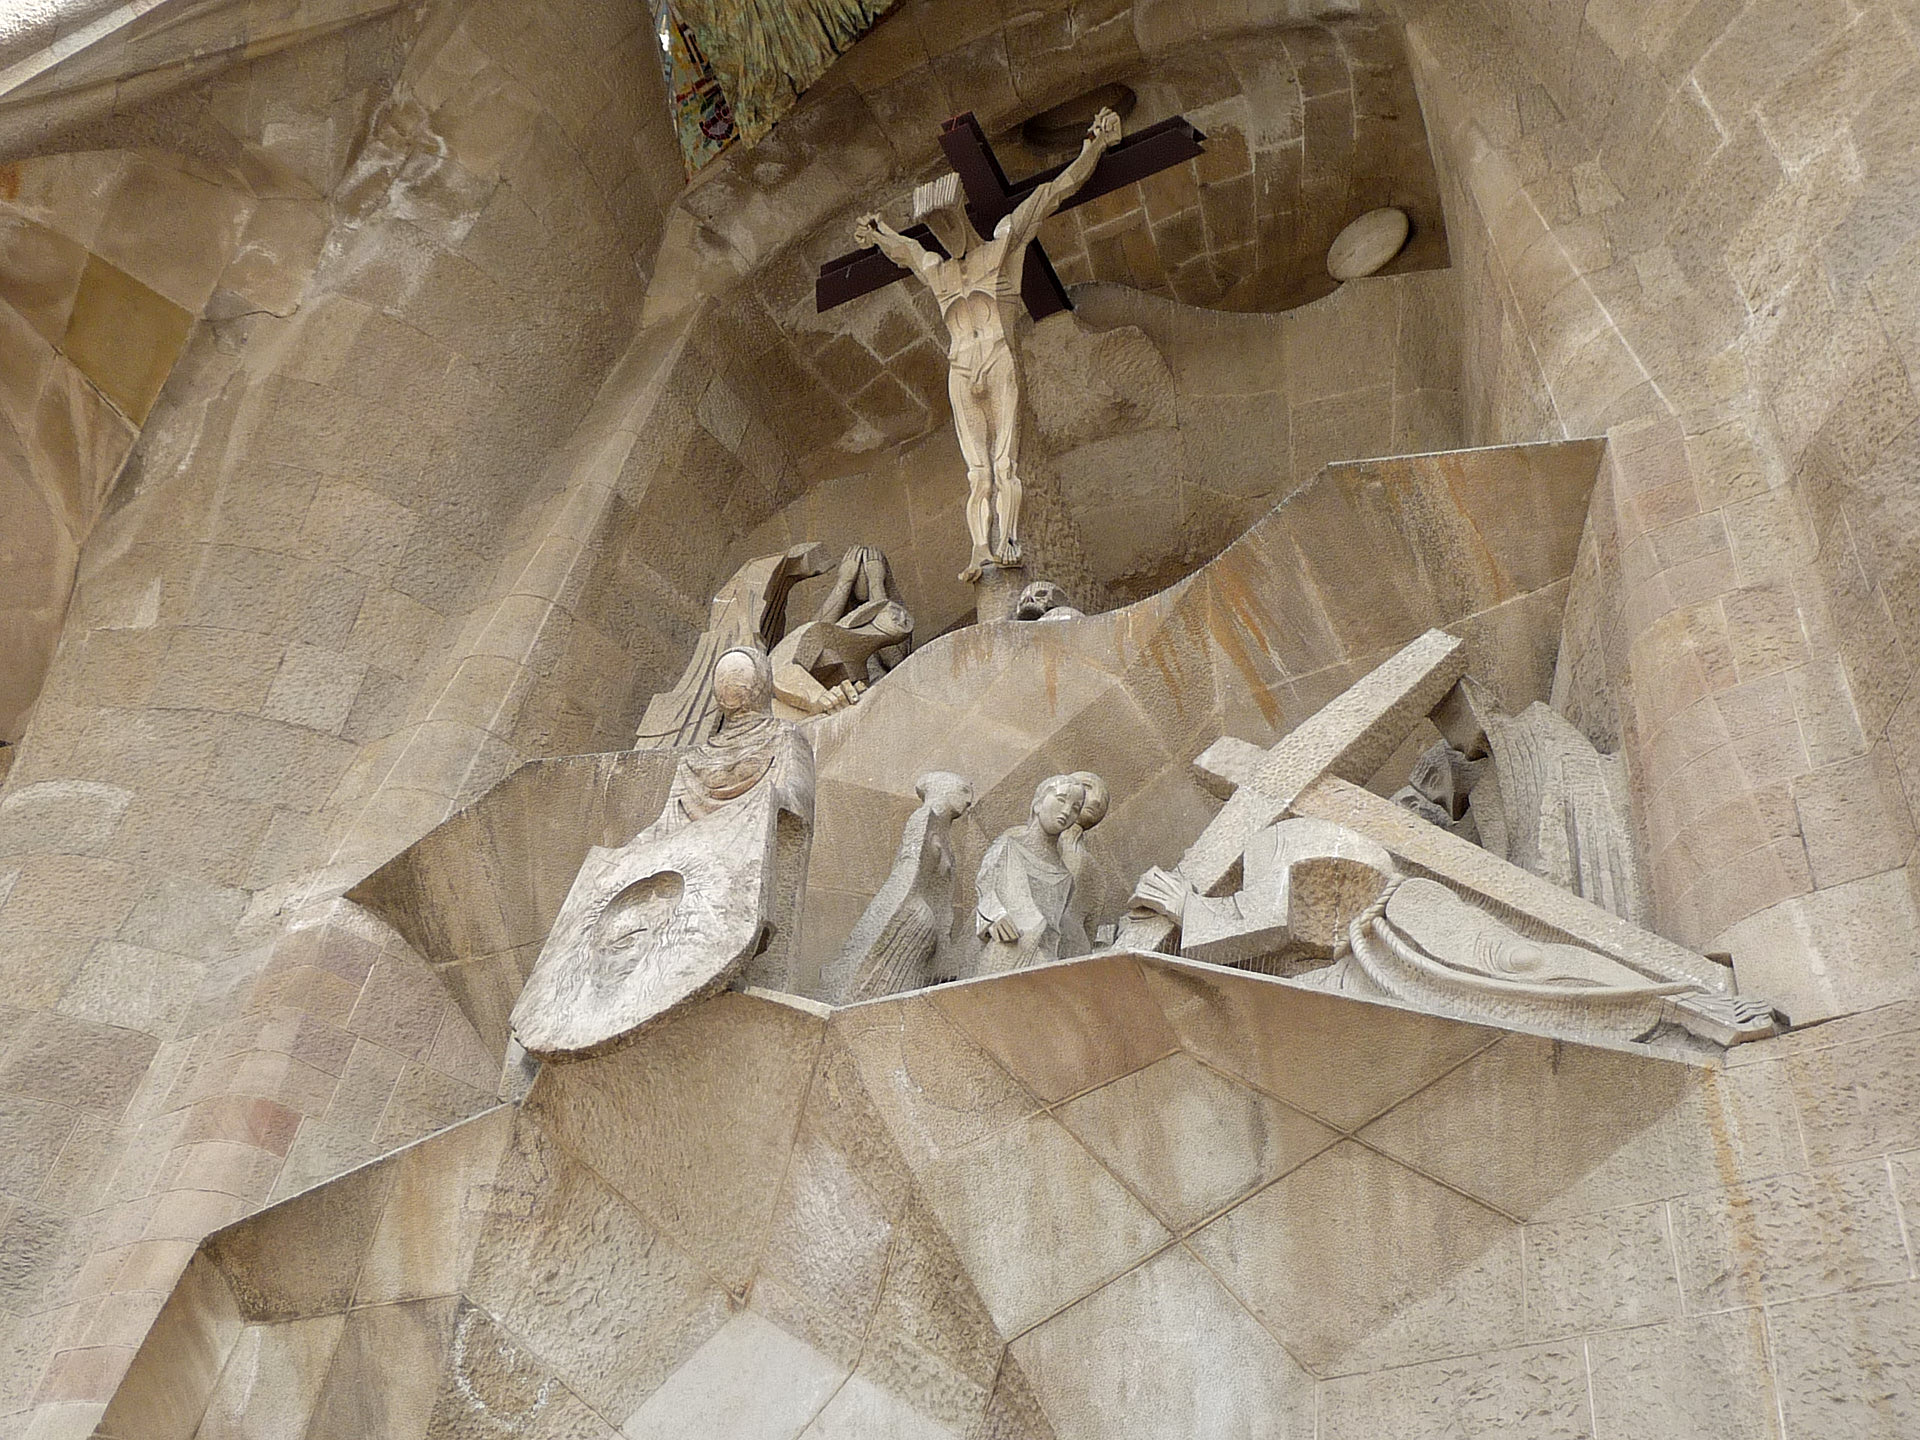 Bauwerk   Kirche/Dom   Sagrada Familia   